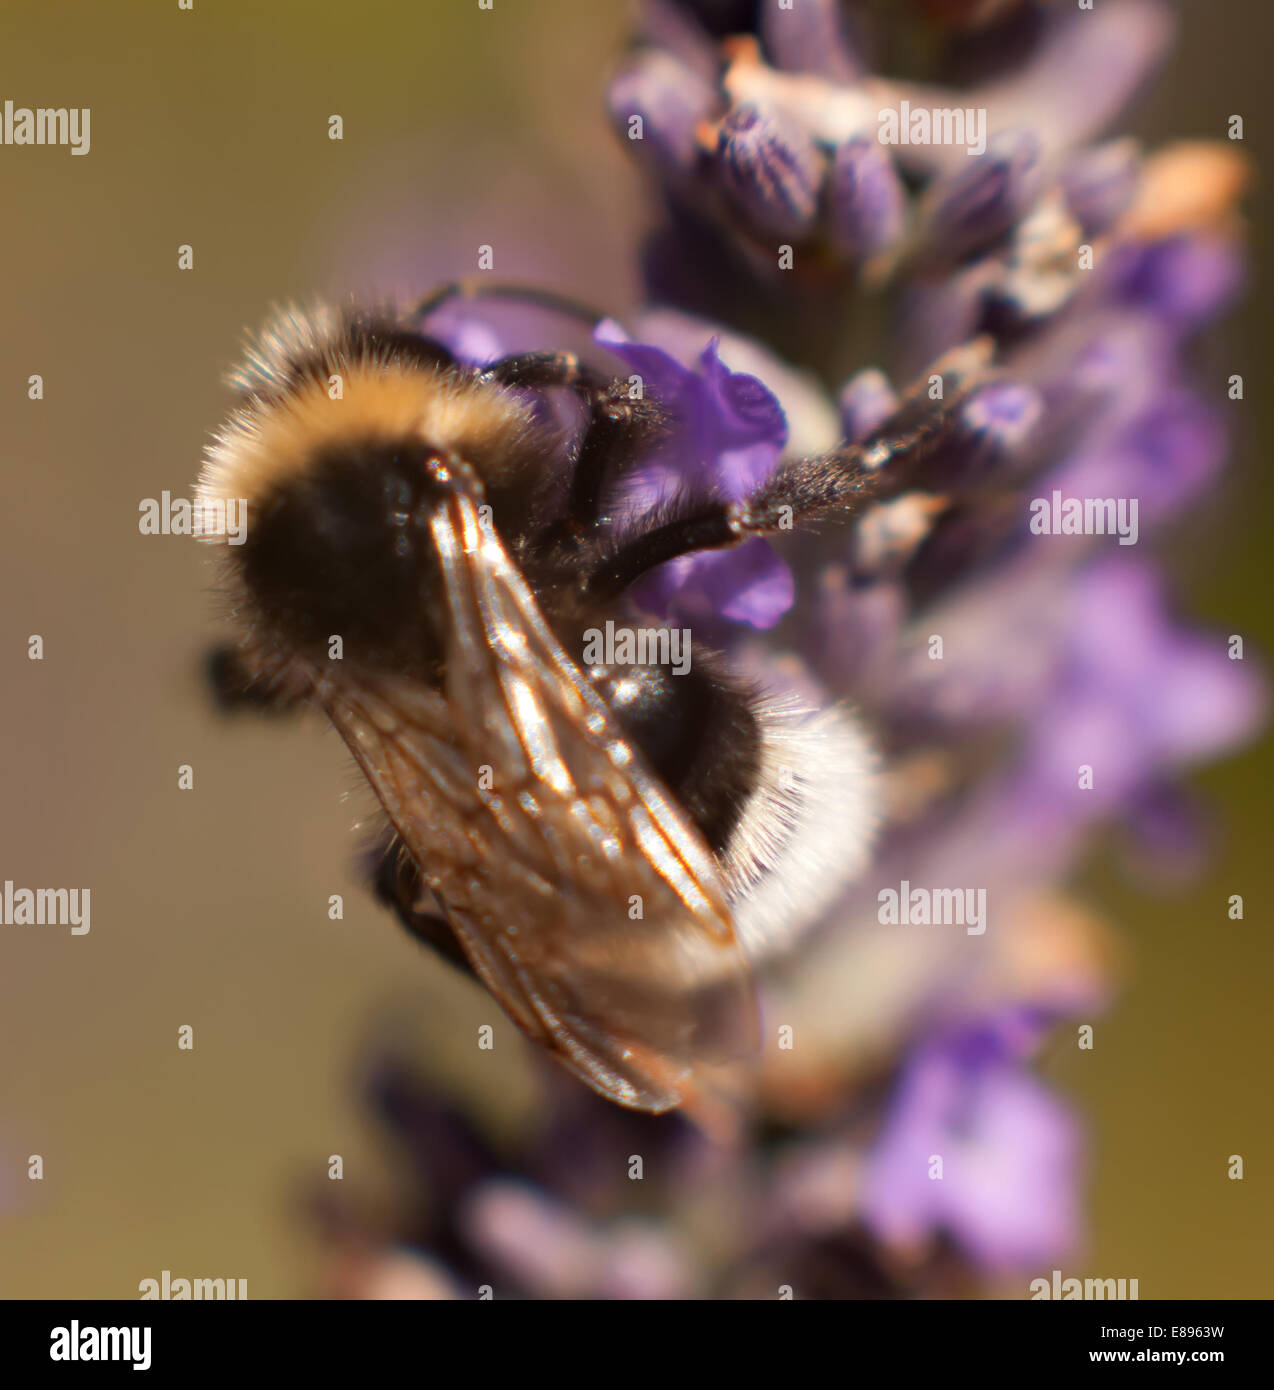 Bumble bee close up Stock Photo